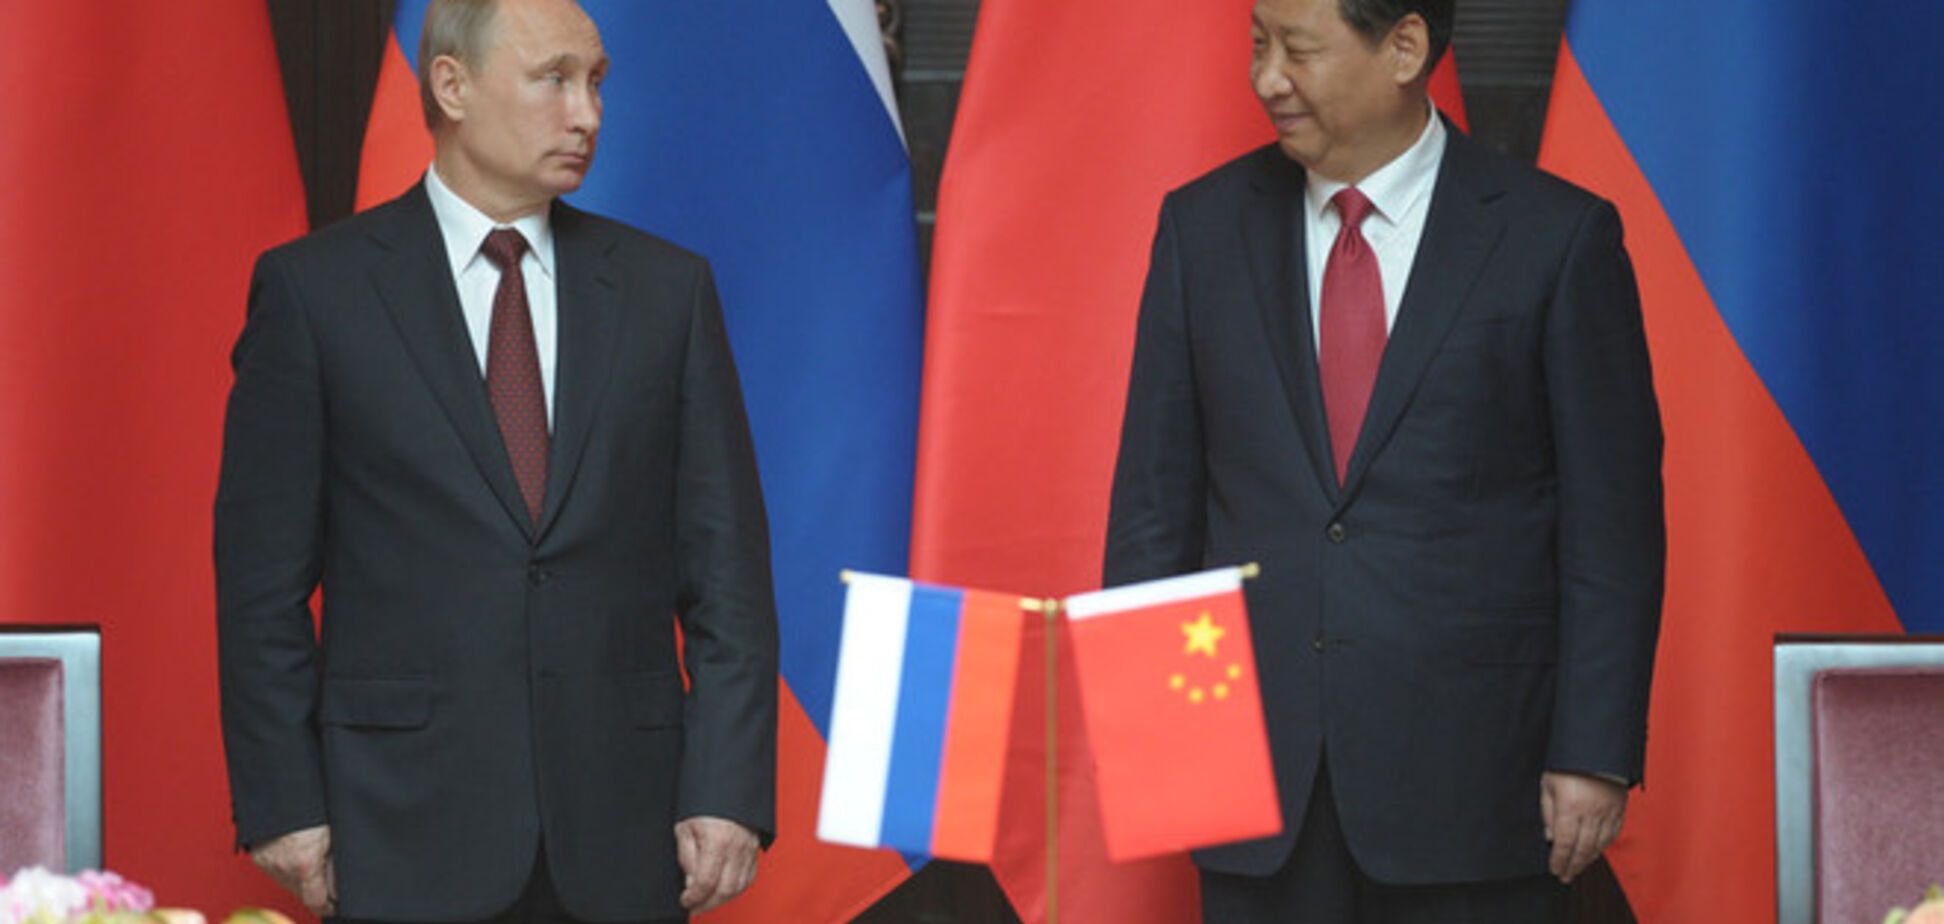 После событий в Украине Китай не спешит подписывать газовый контракт с Путиным - Немцов